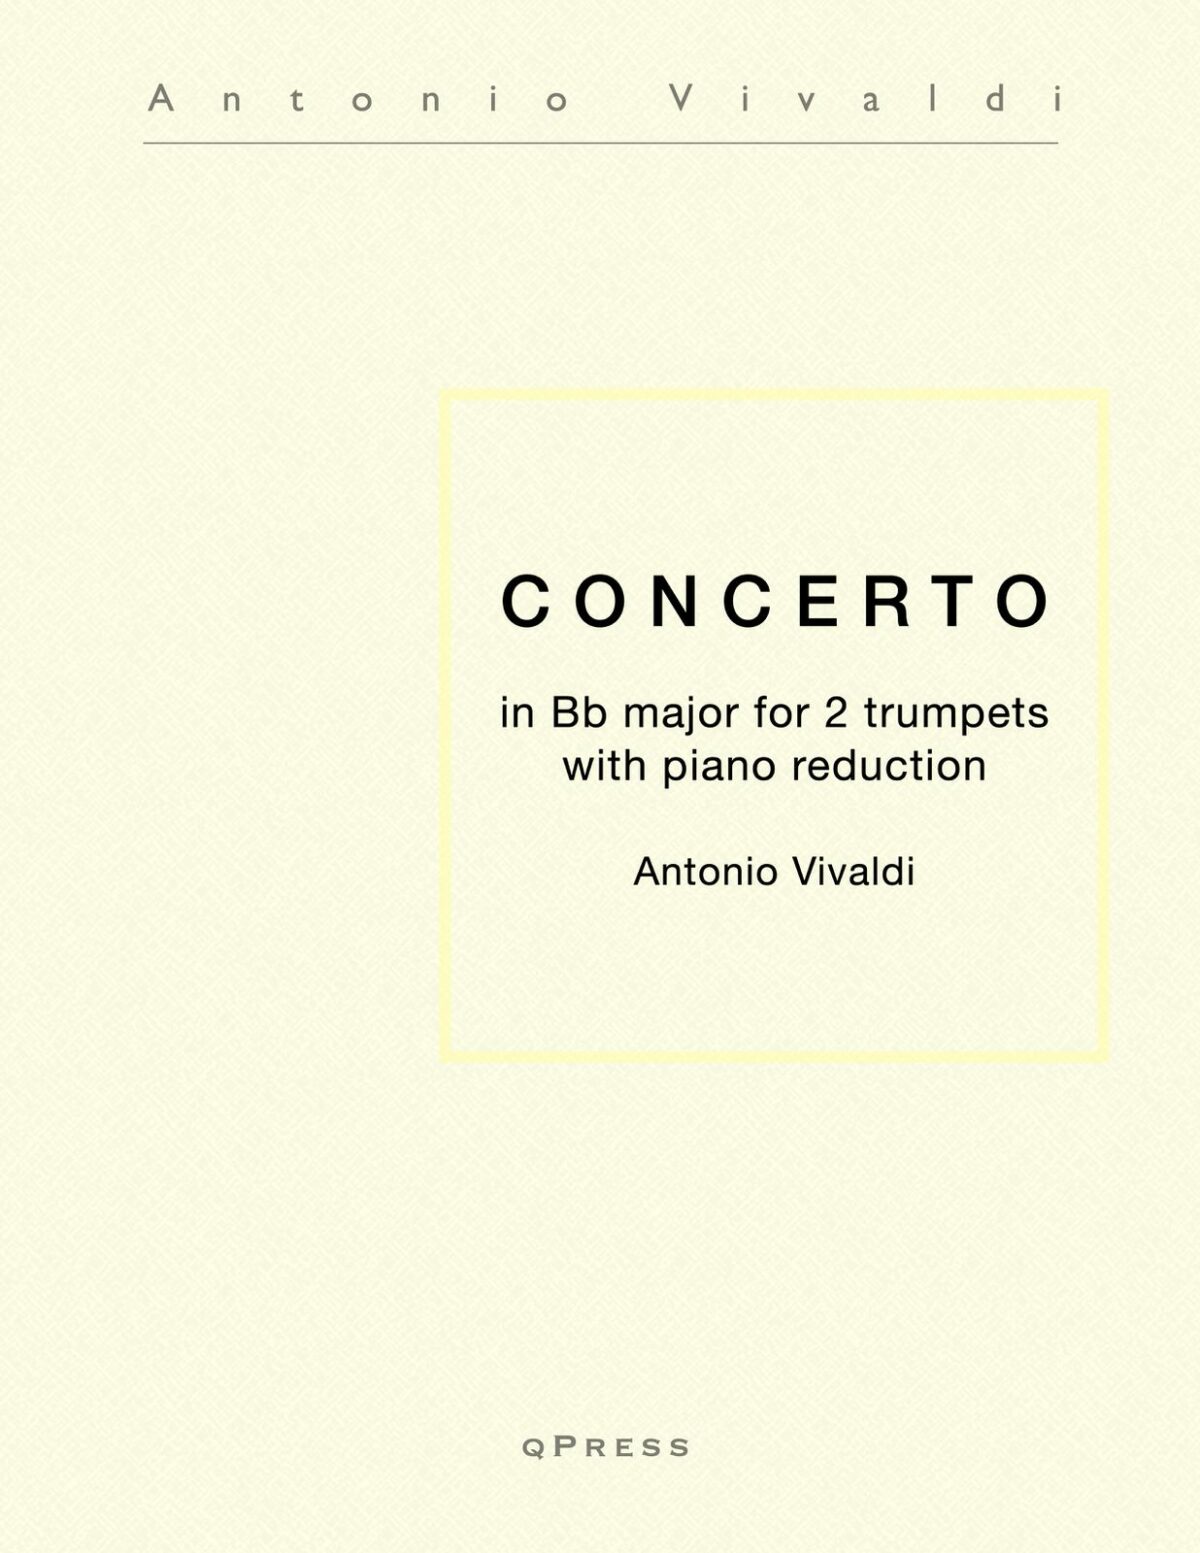 Vivaldi, Concerto for Trumpets in Bb-p01